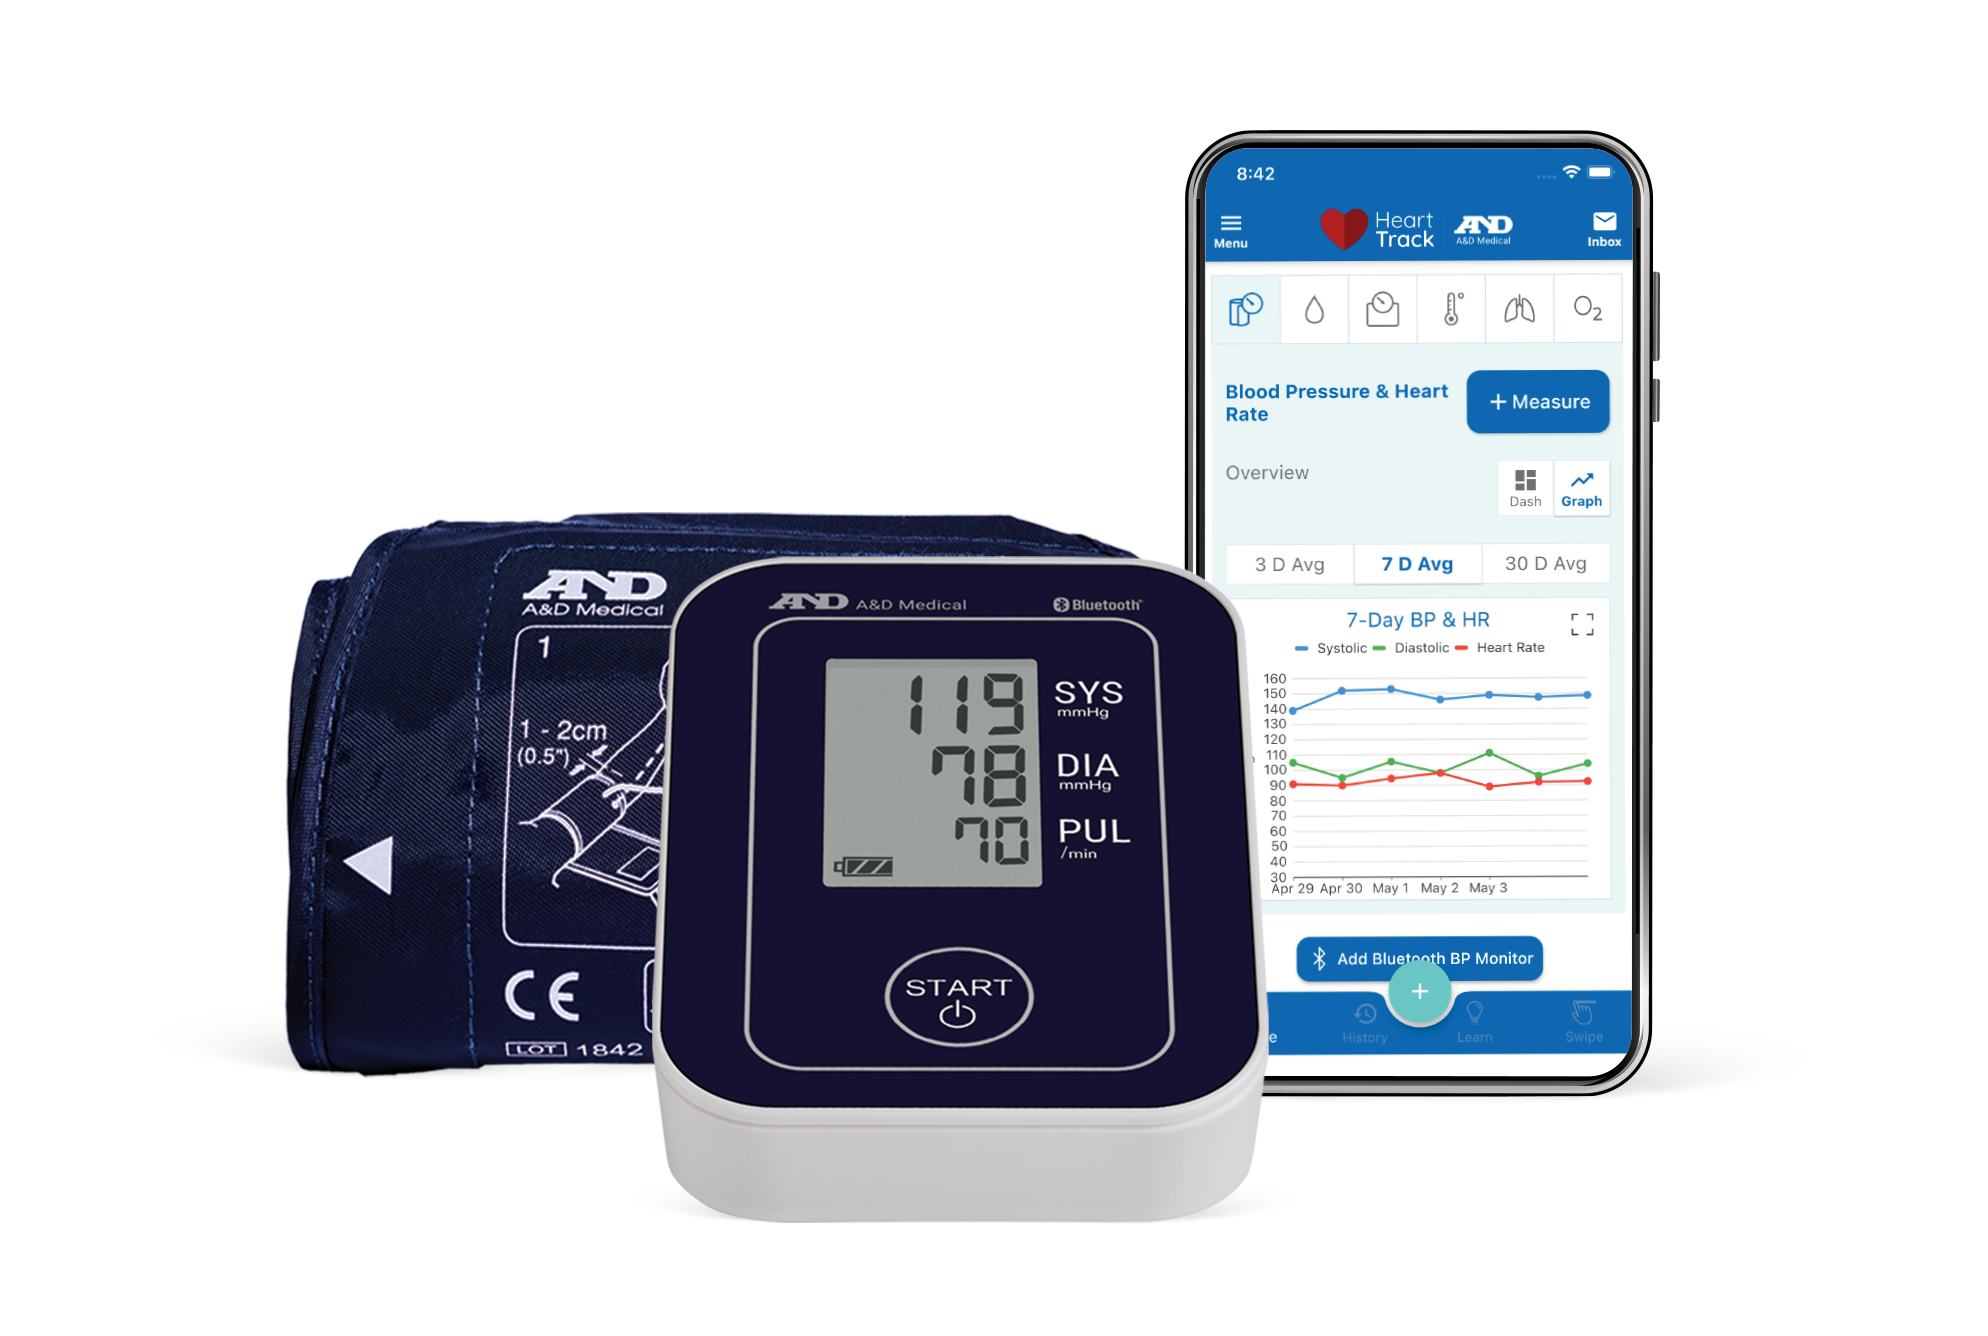 Blood Pressure Monitors - A&D Medical